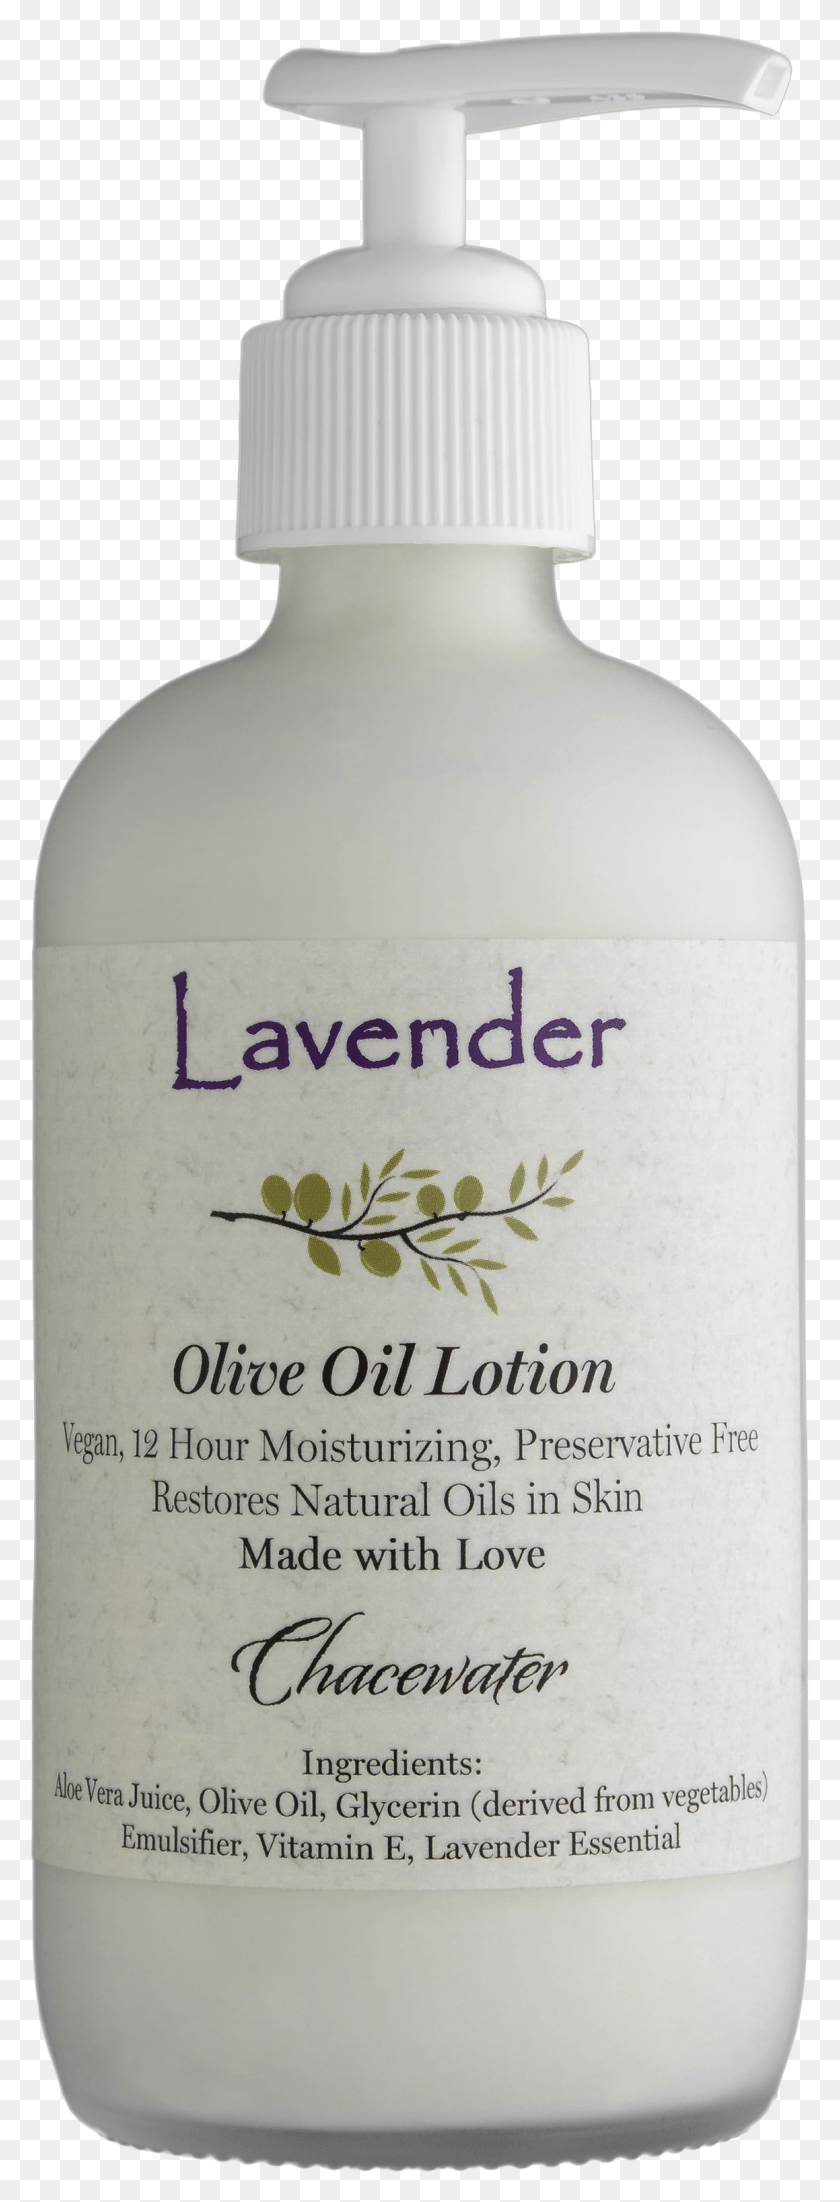 1159x3183 Lavender Olive Oil Lotion Liquid Hand Soap, Bottle, Milk, Beverage HD PNG Download